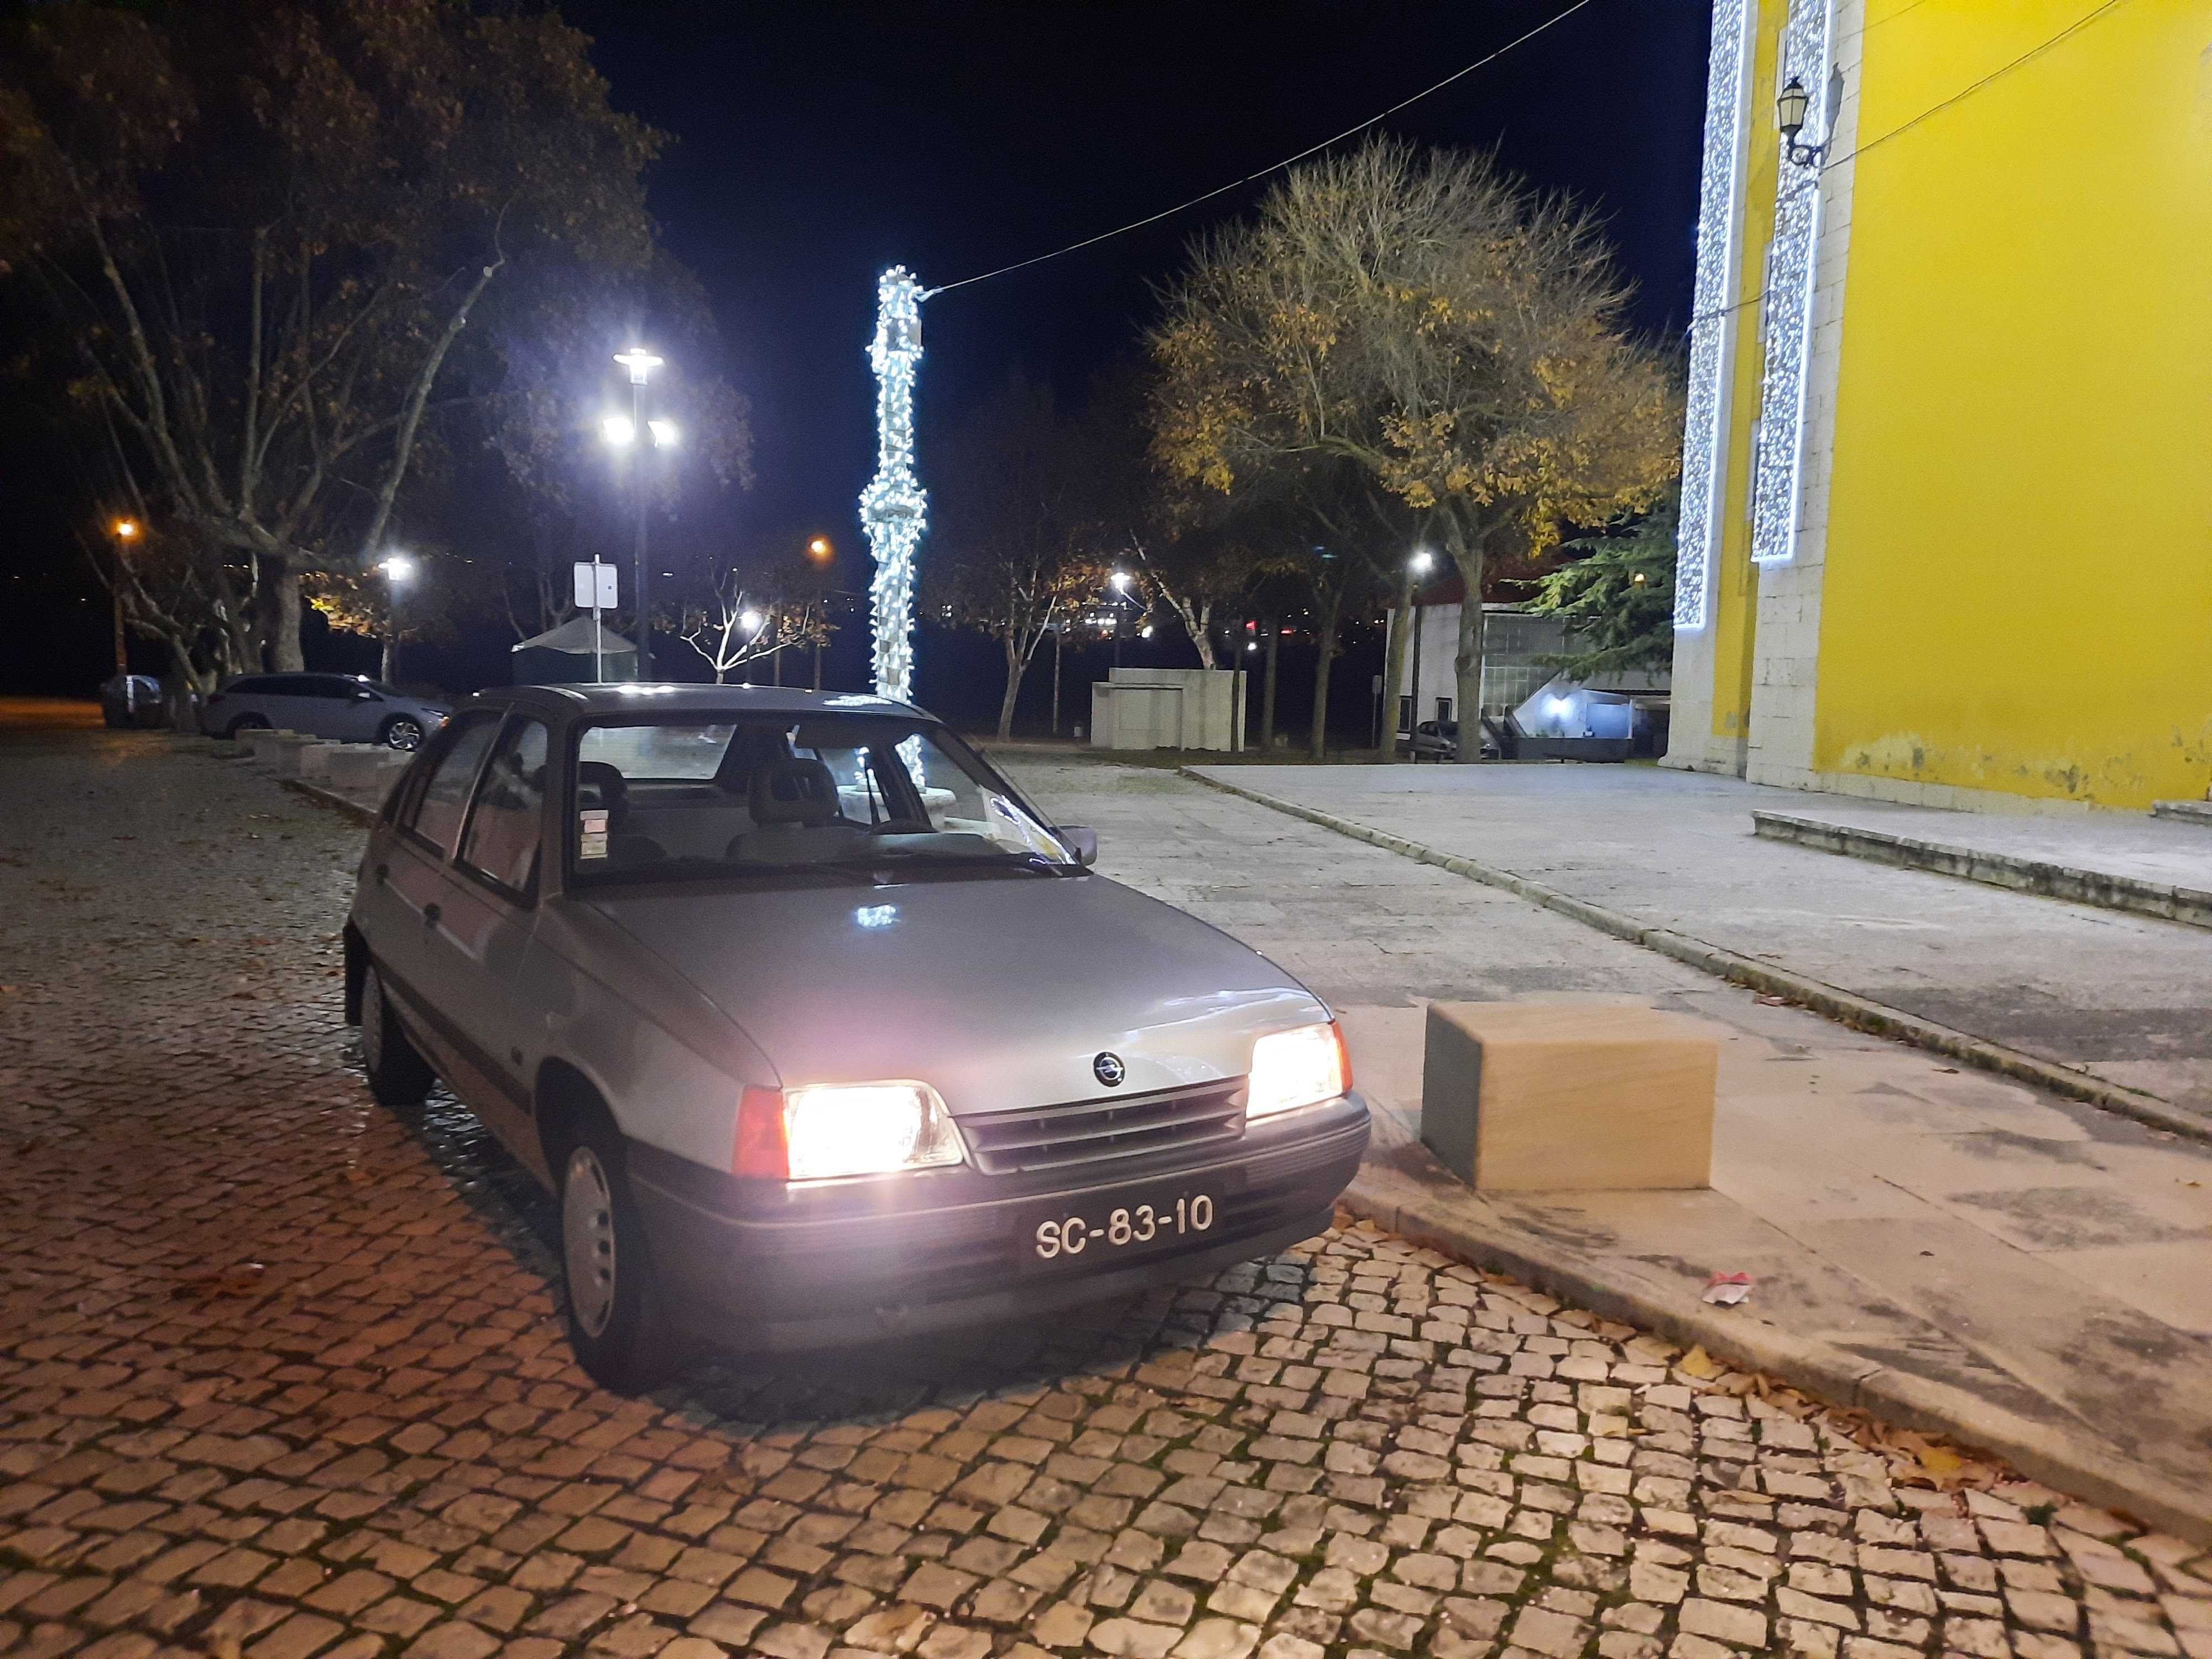 Opel Kadett 1.2 LS